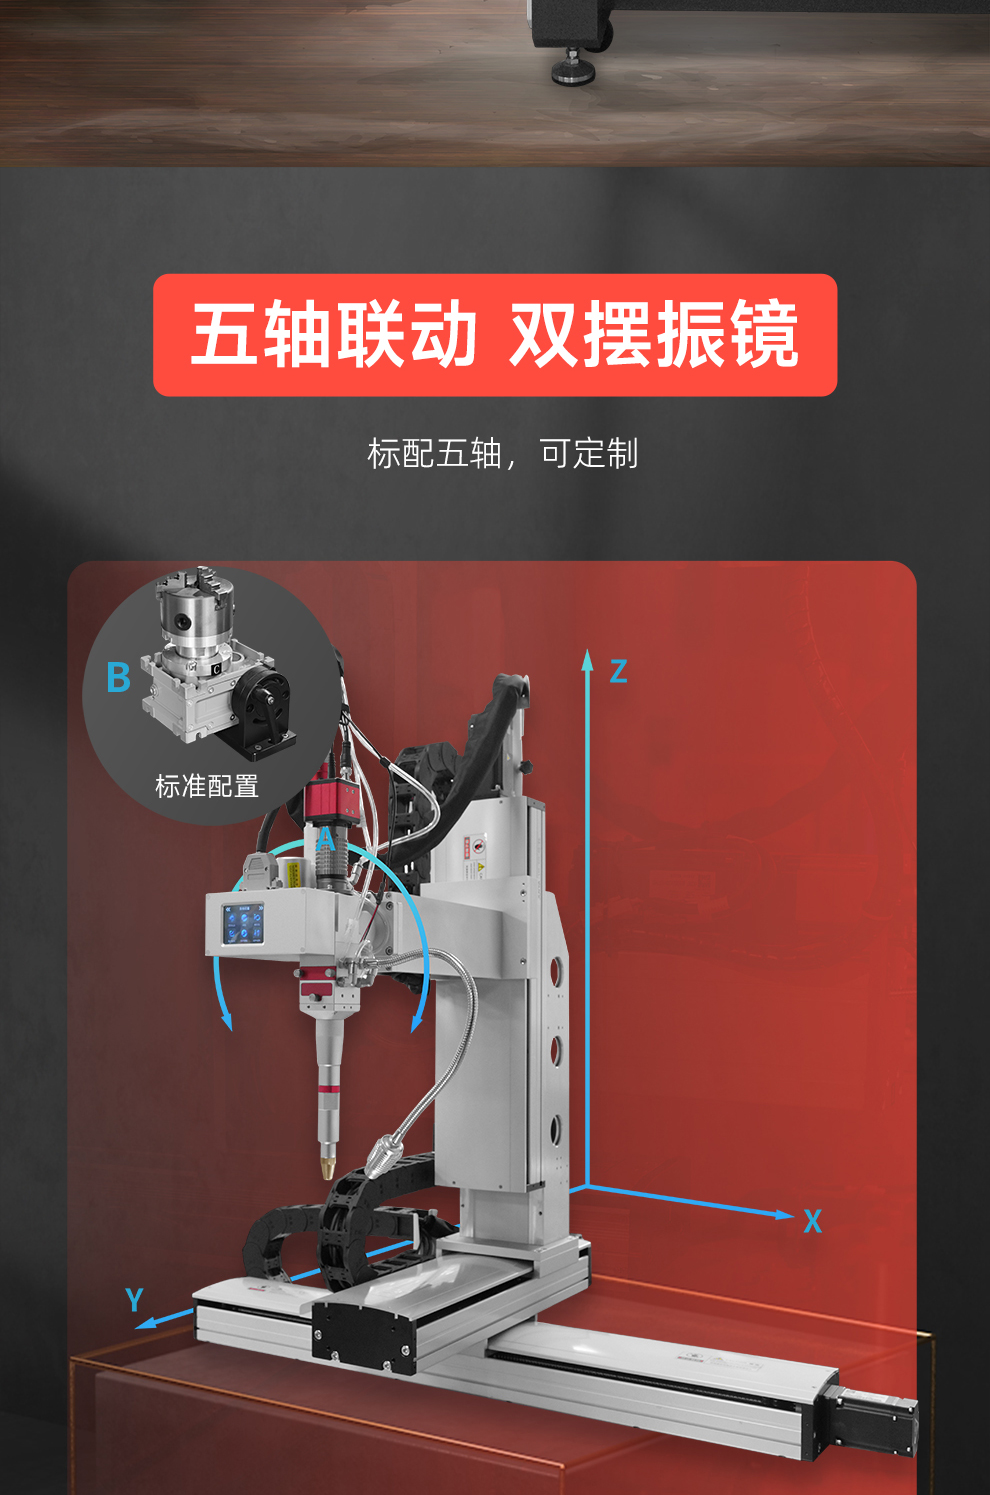 【待审】内贸-平台自动激光焊接机--详情O0520牛力_03.jpg